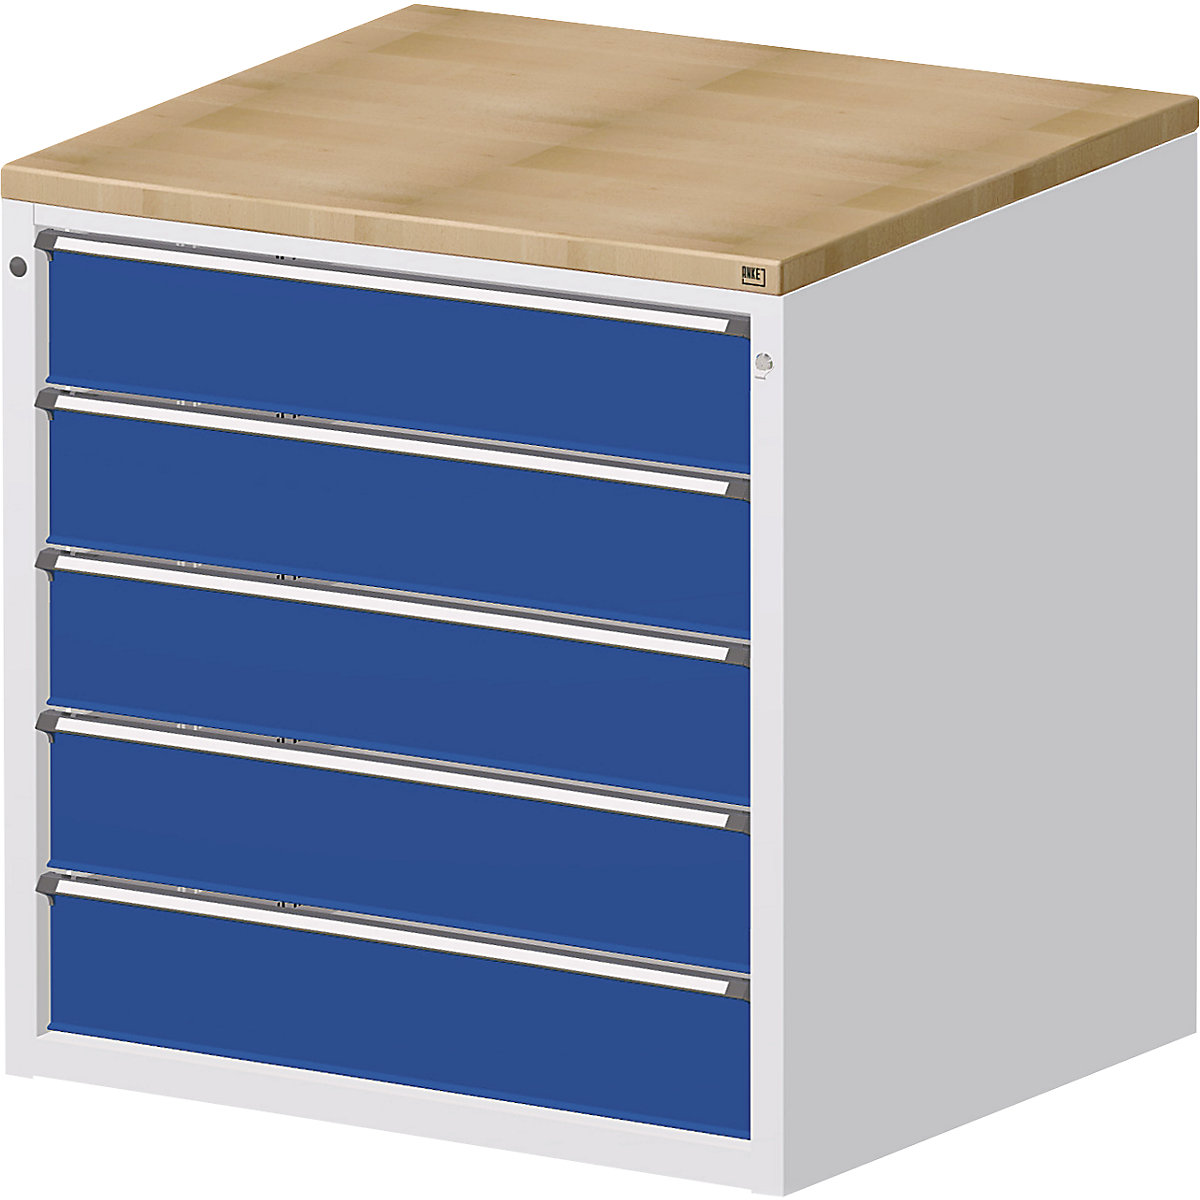 ANKE – Armoire pour comptoir de distribution, 5 tiroirs hauteur 180 mm, gris / bleu